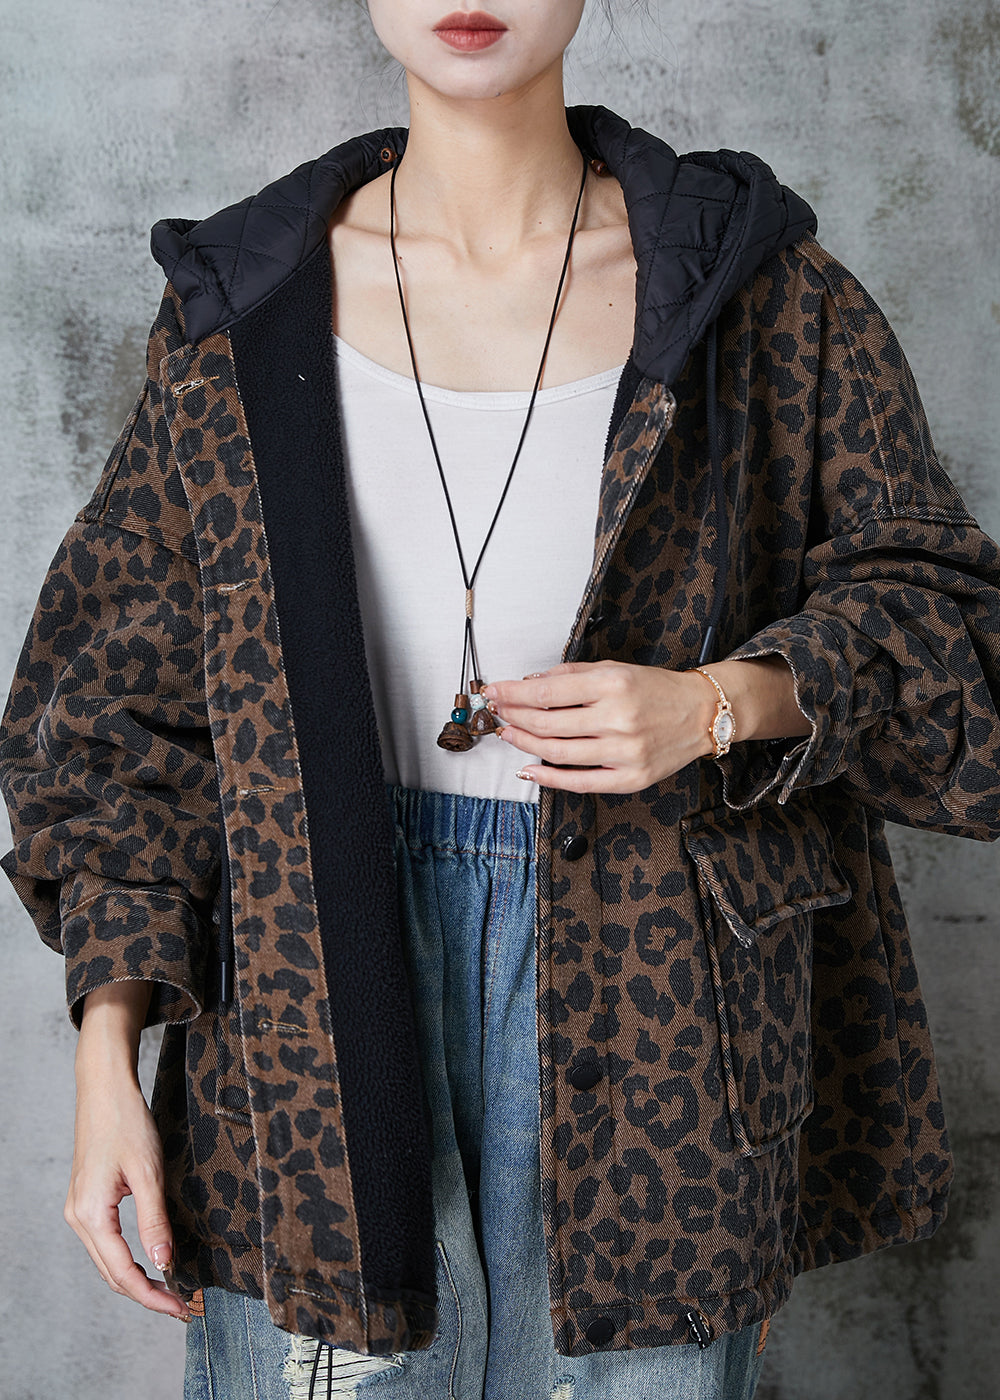 Women Coffee Hooded Leopard Print Warm Fleece Coat Spring